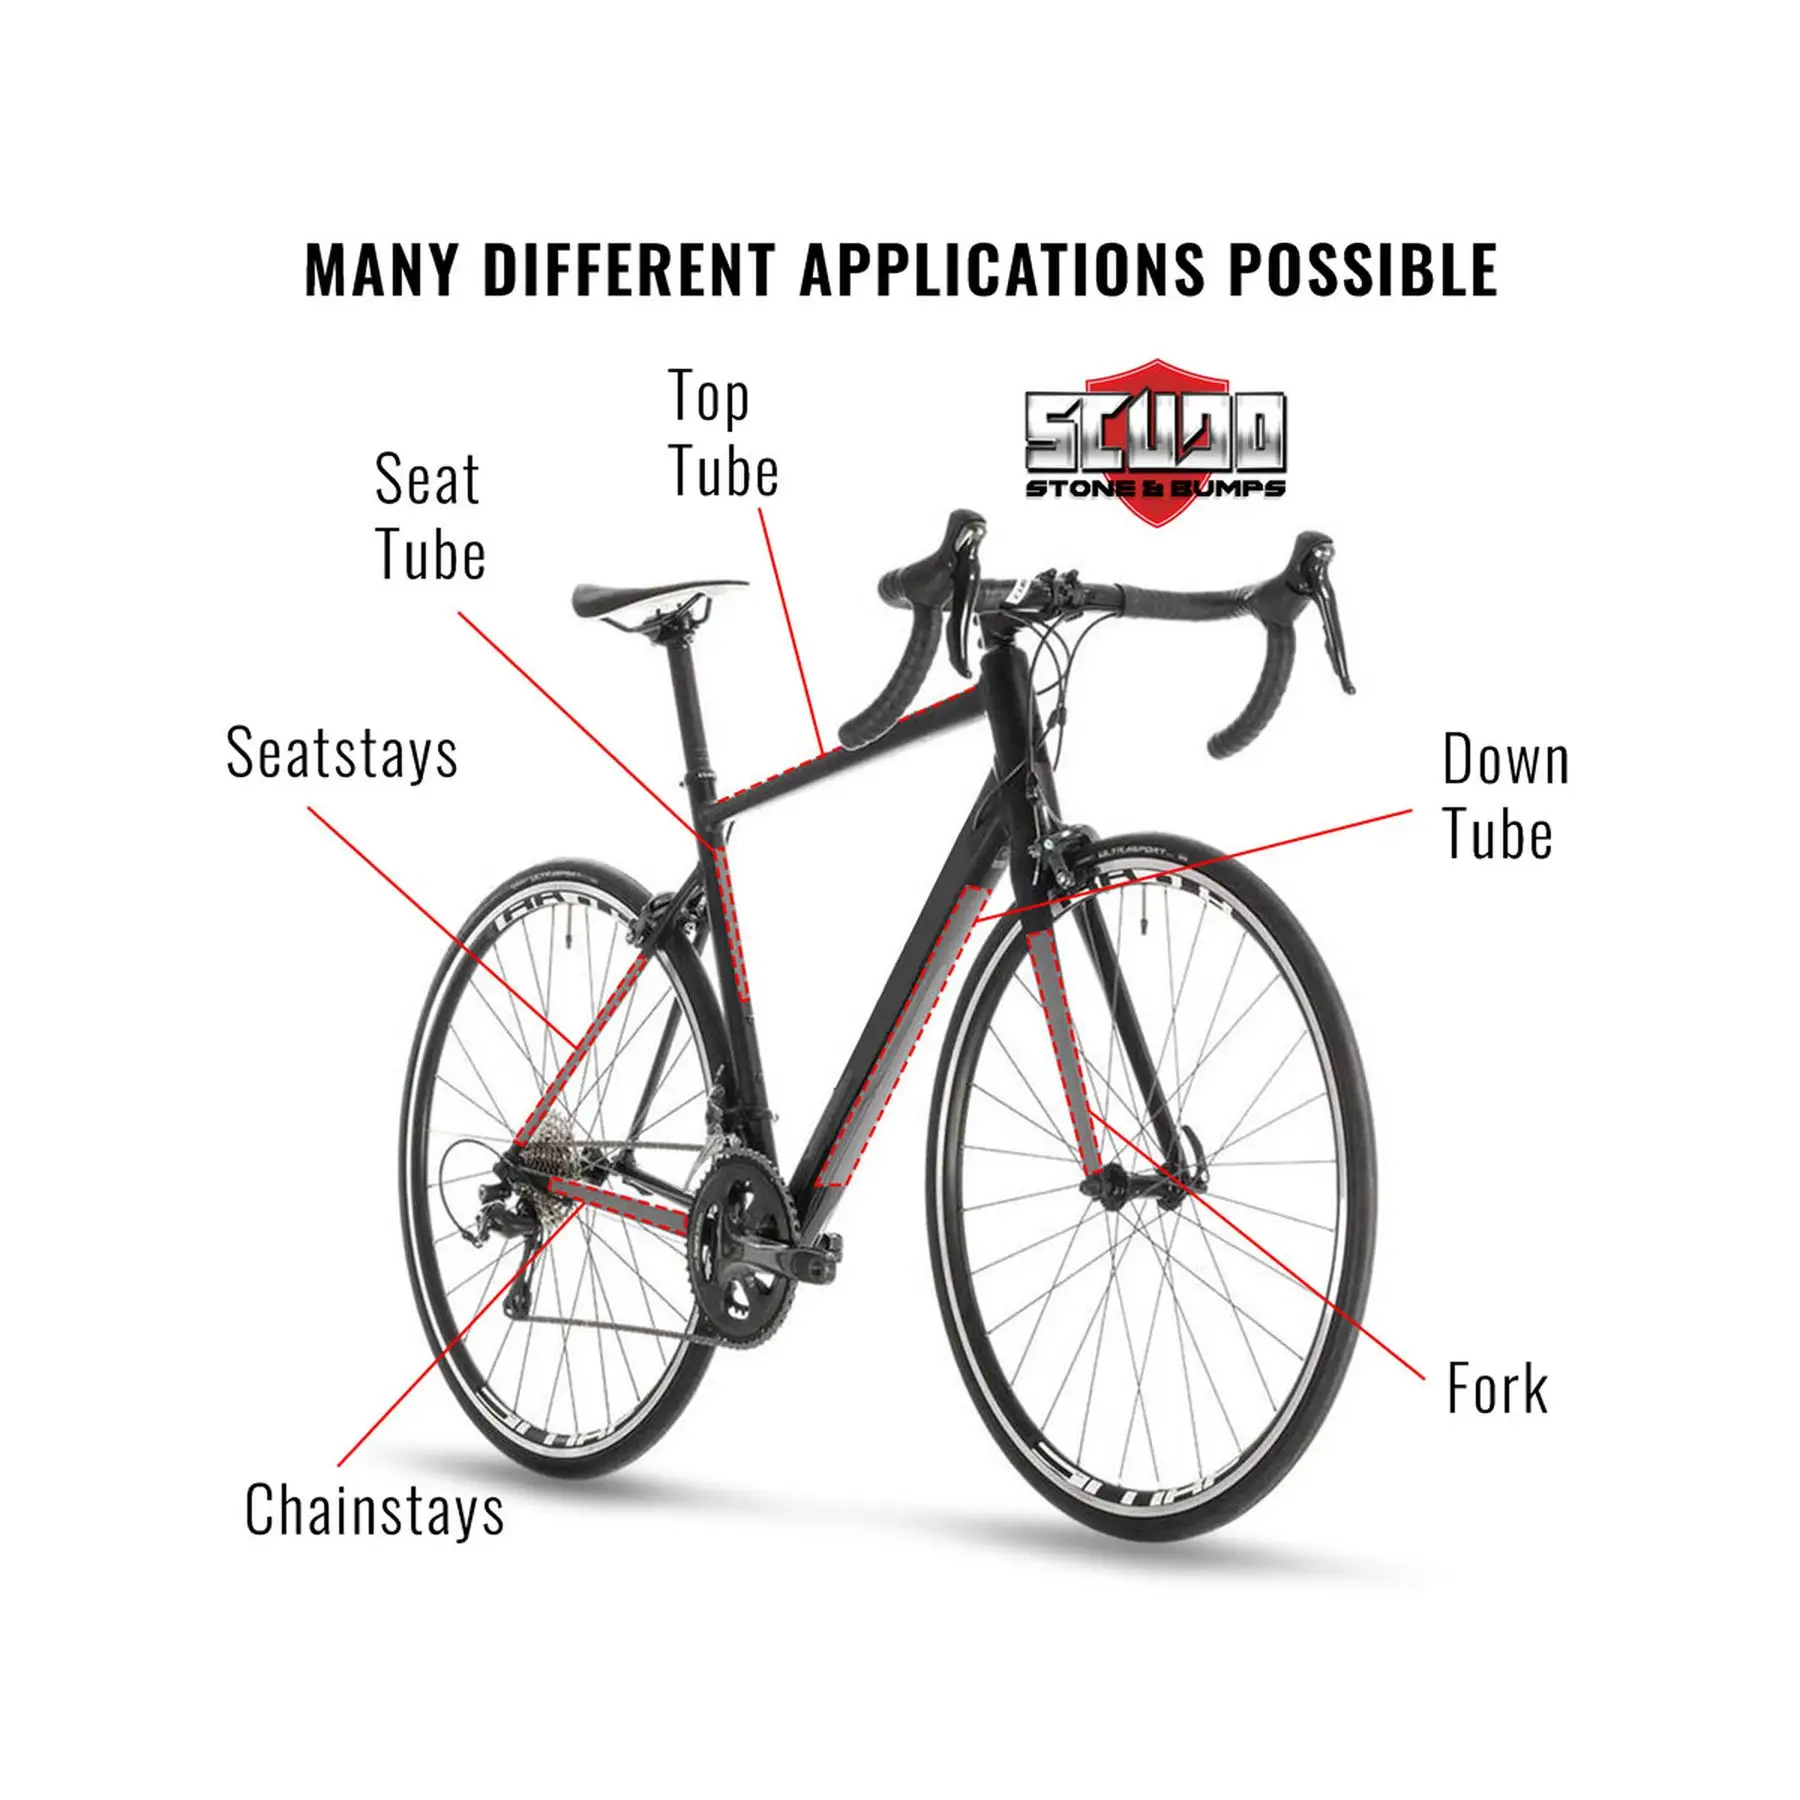 حماية نهائية لإطار الدراجة مع أفضل ملصقات في فئتها للدراجة - تلائمك حسب الطلب، متانة أفضل | حماية دراجتك